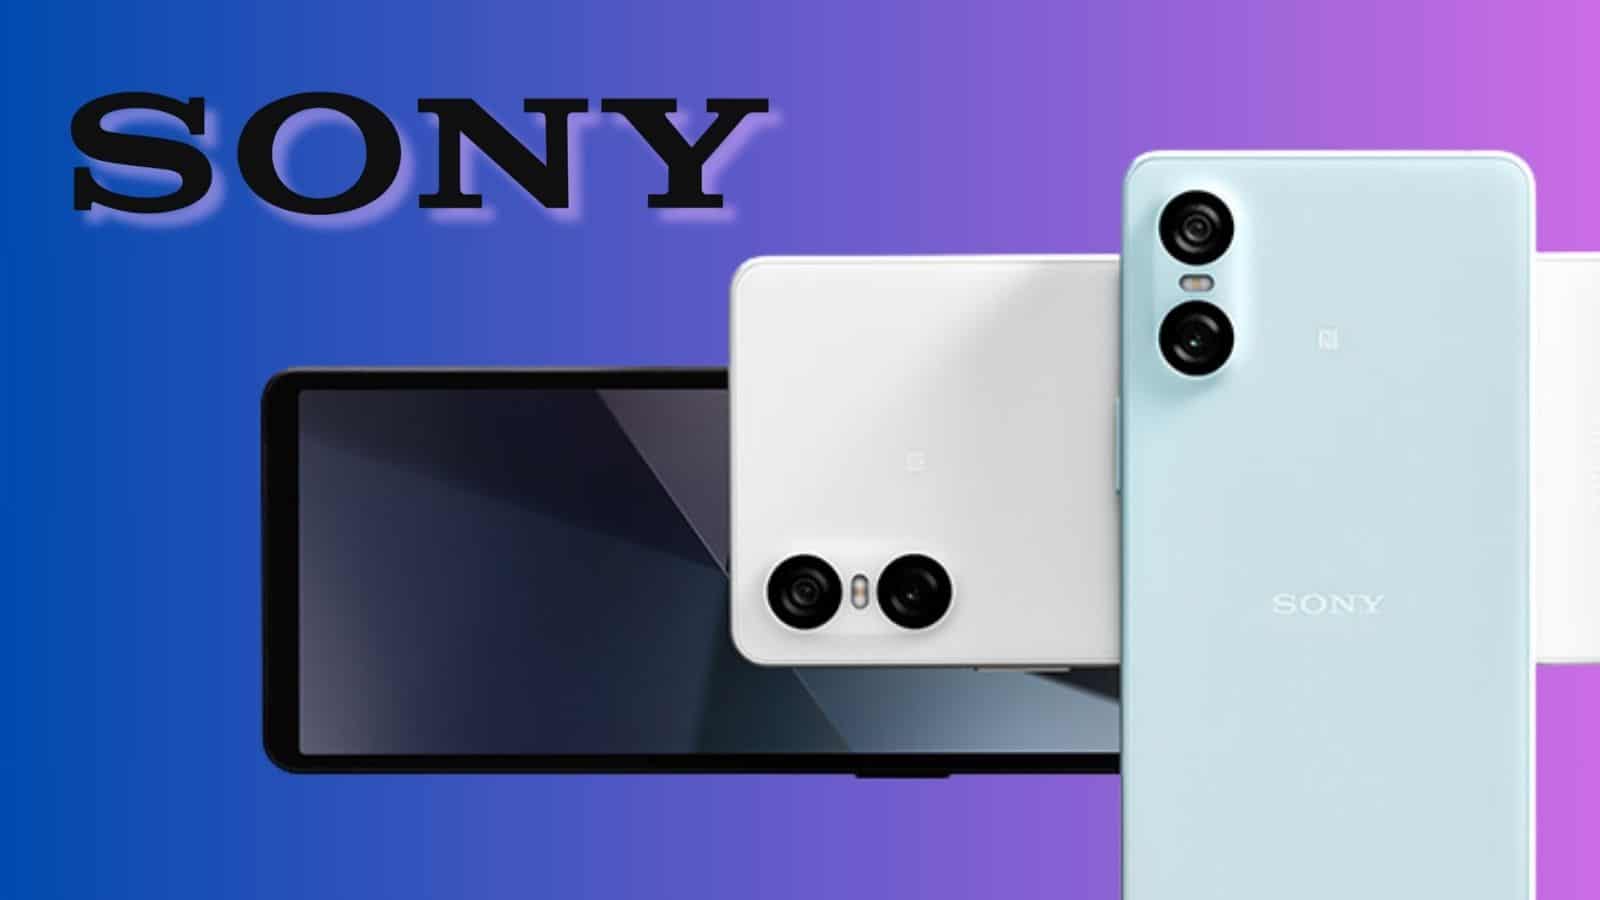 Sony Xperia 1 VI: anticipazioni e dettagli svelati dello smartphone